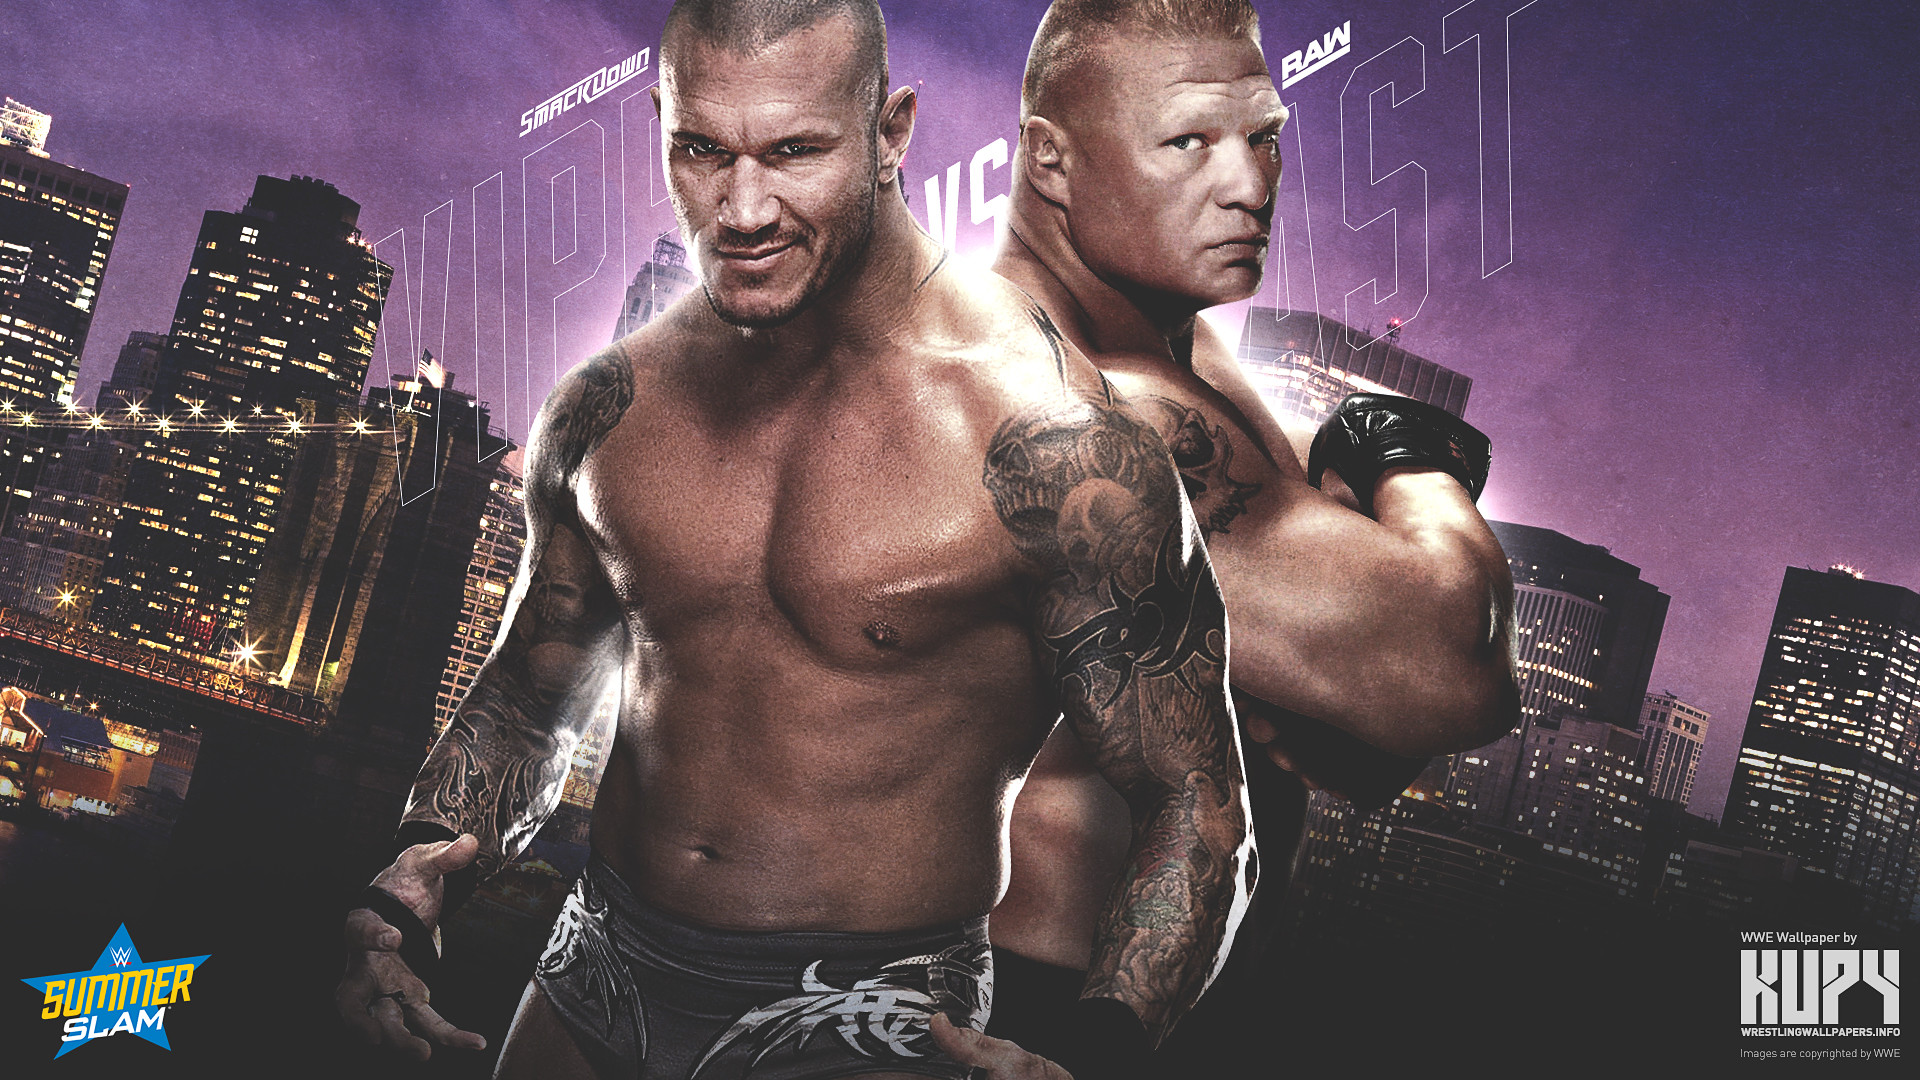 1280ã1024 - Wwe Randy Orton And Brock Lesnar - HD Wallpaper 